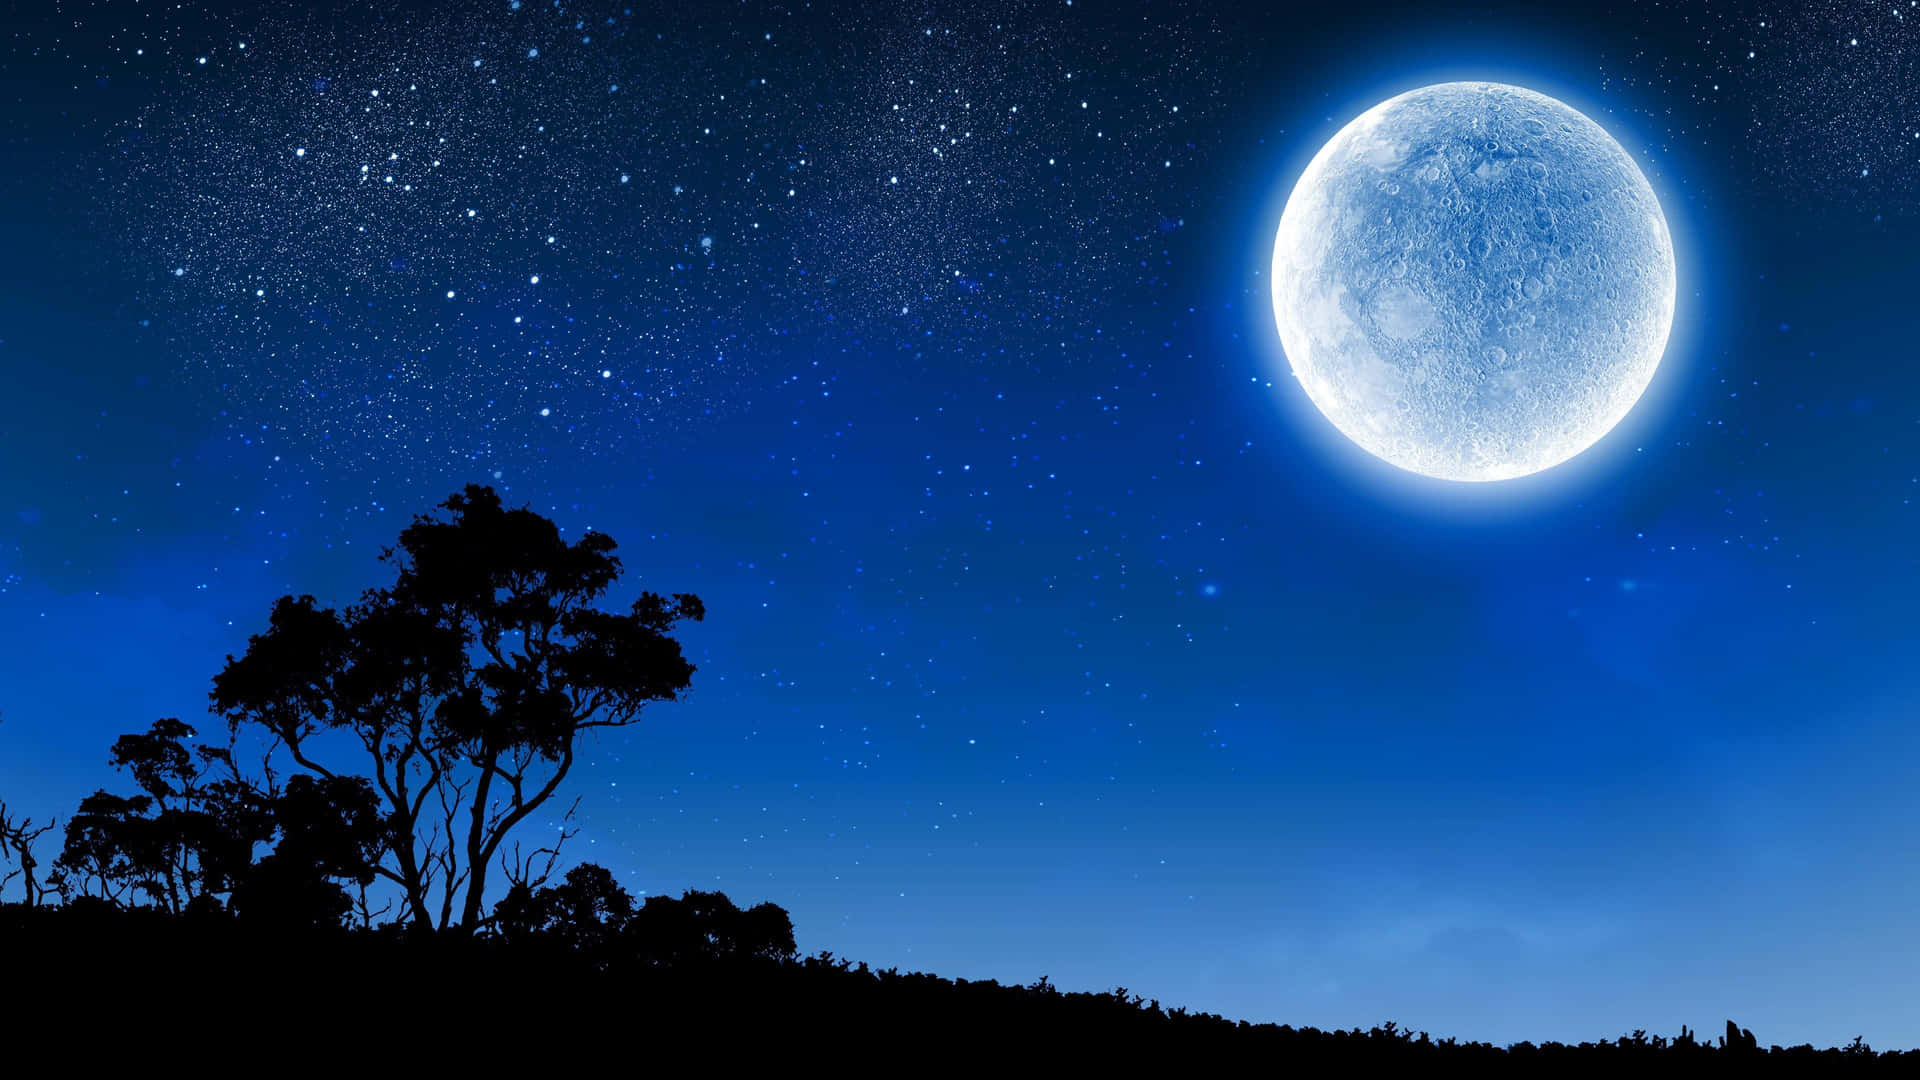 40,000+ Free Night & Moon Images - Pixabay